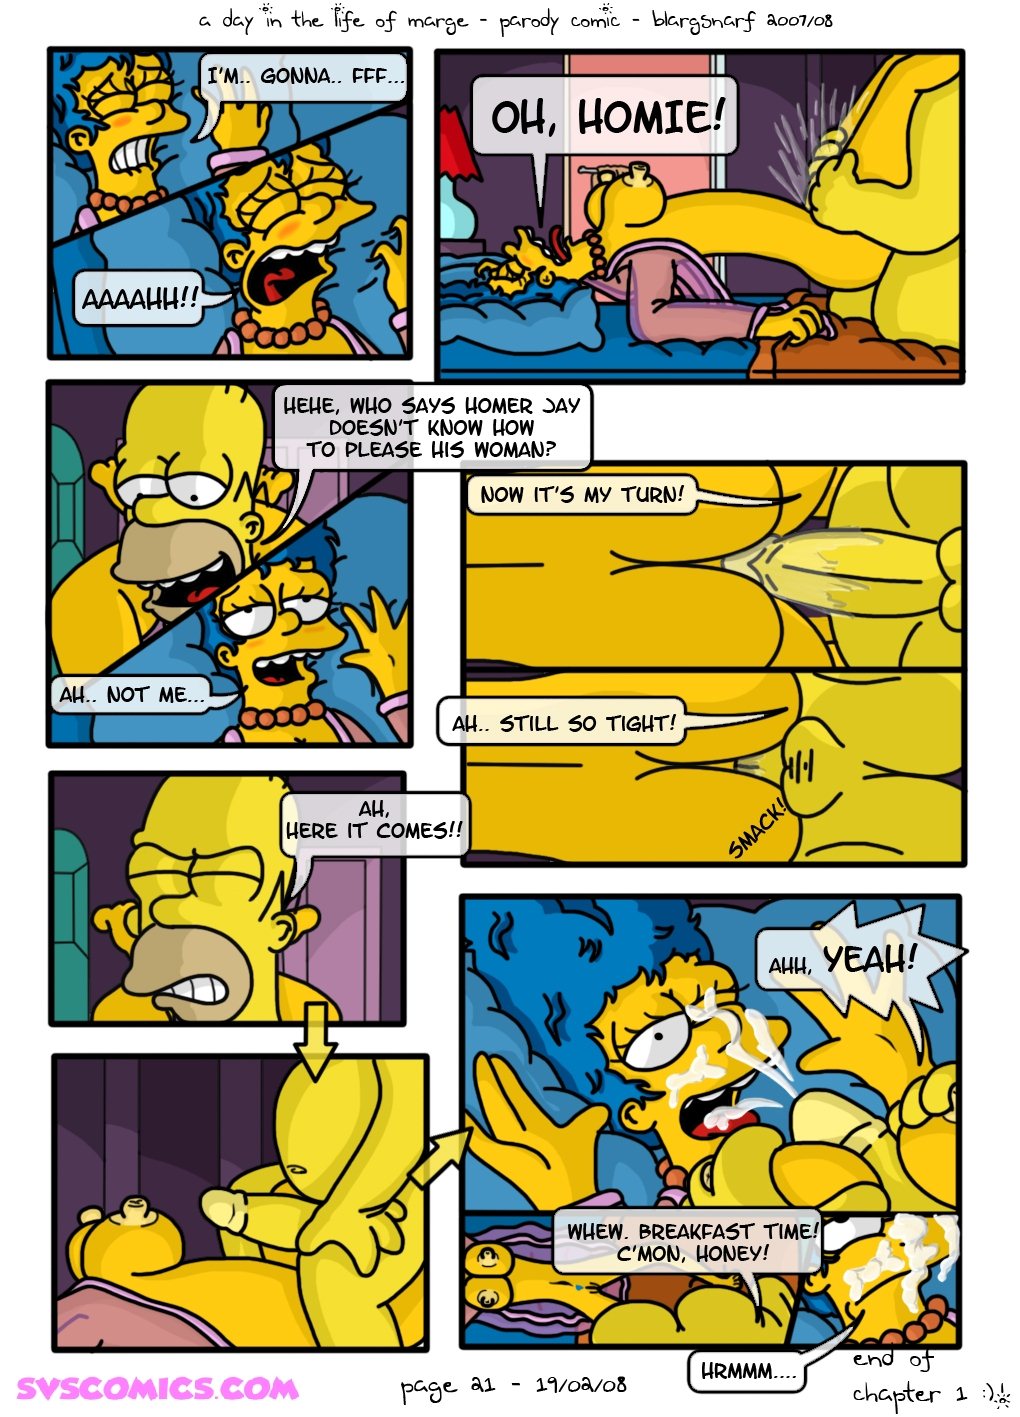 A dzień w Życie z Marge (the simpsons) część 2